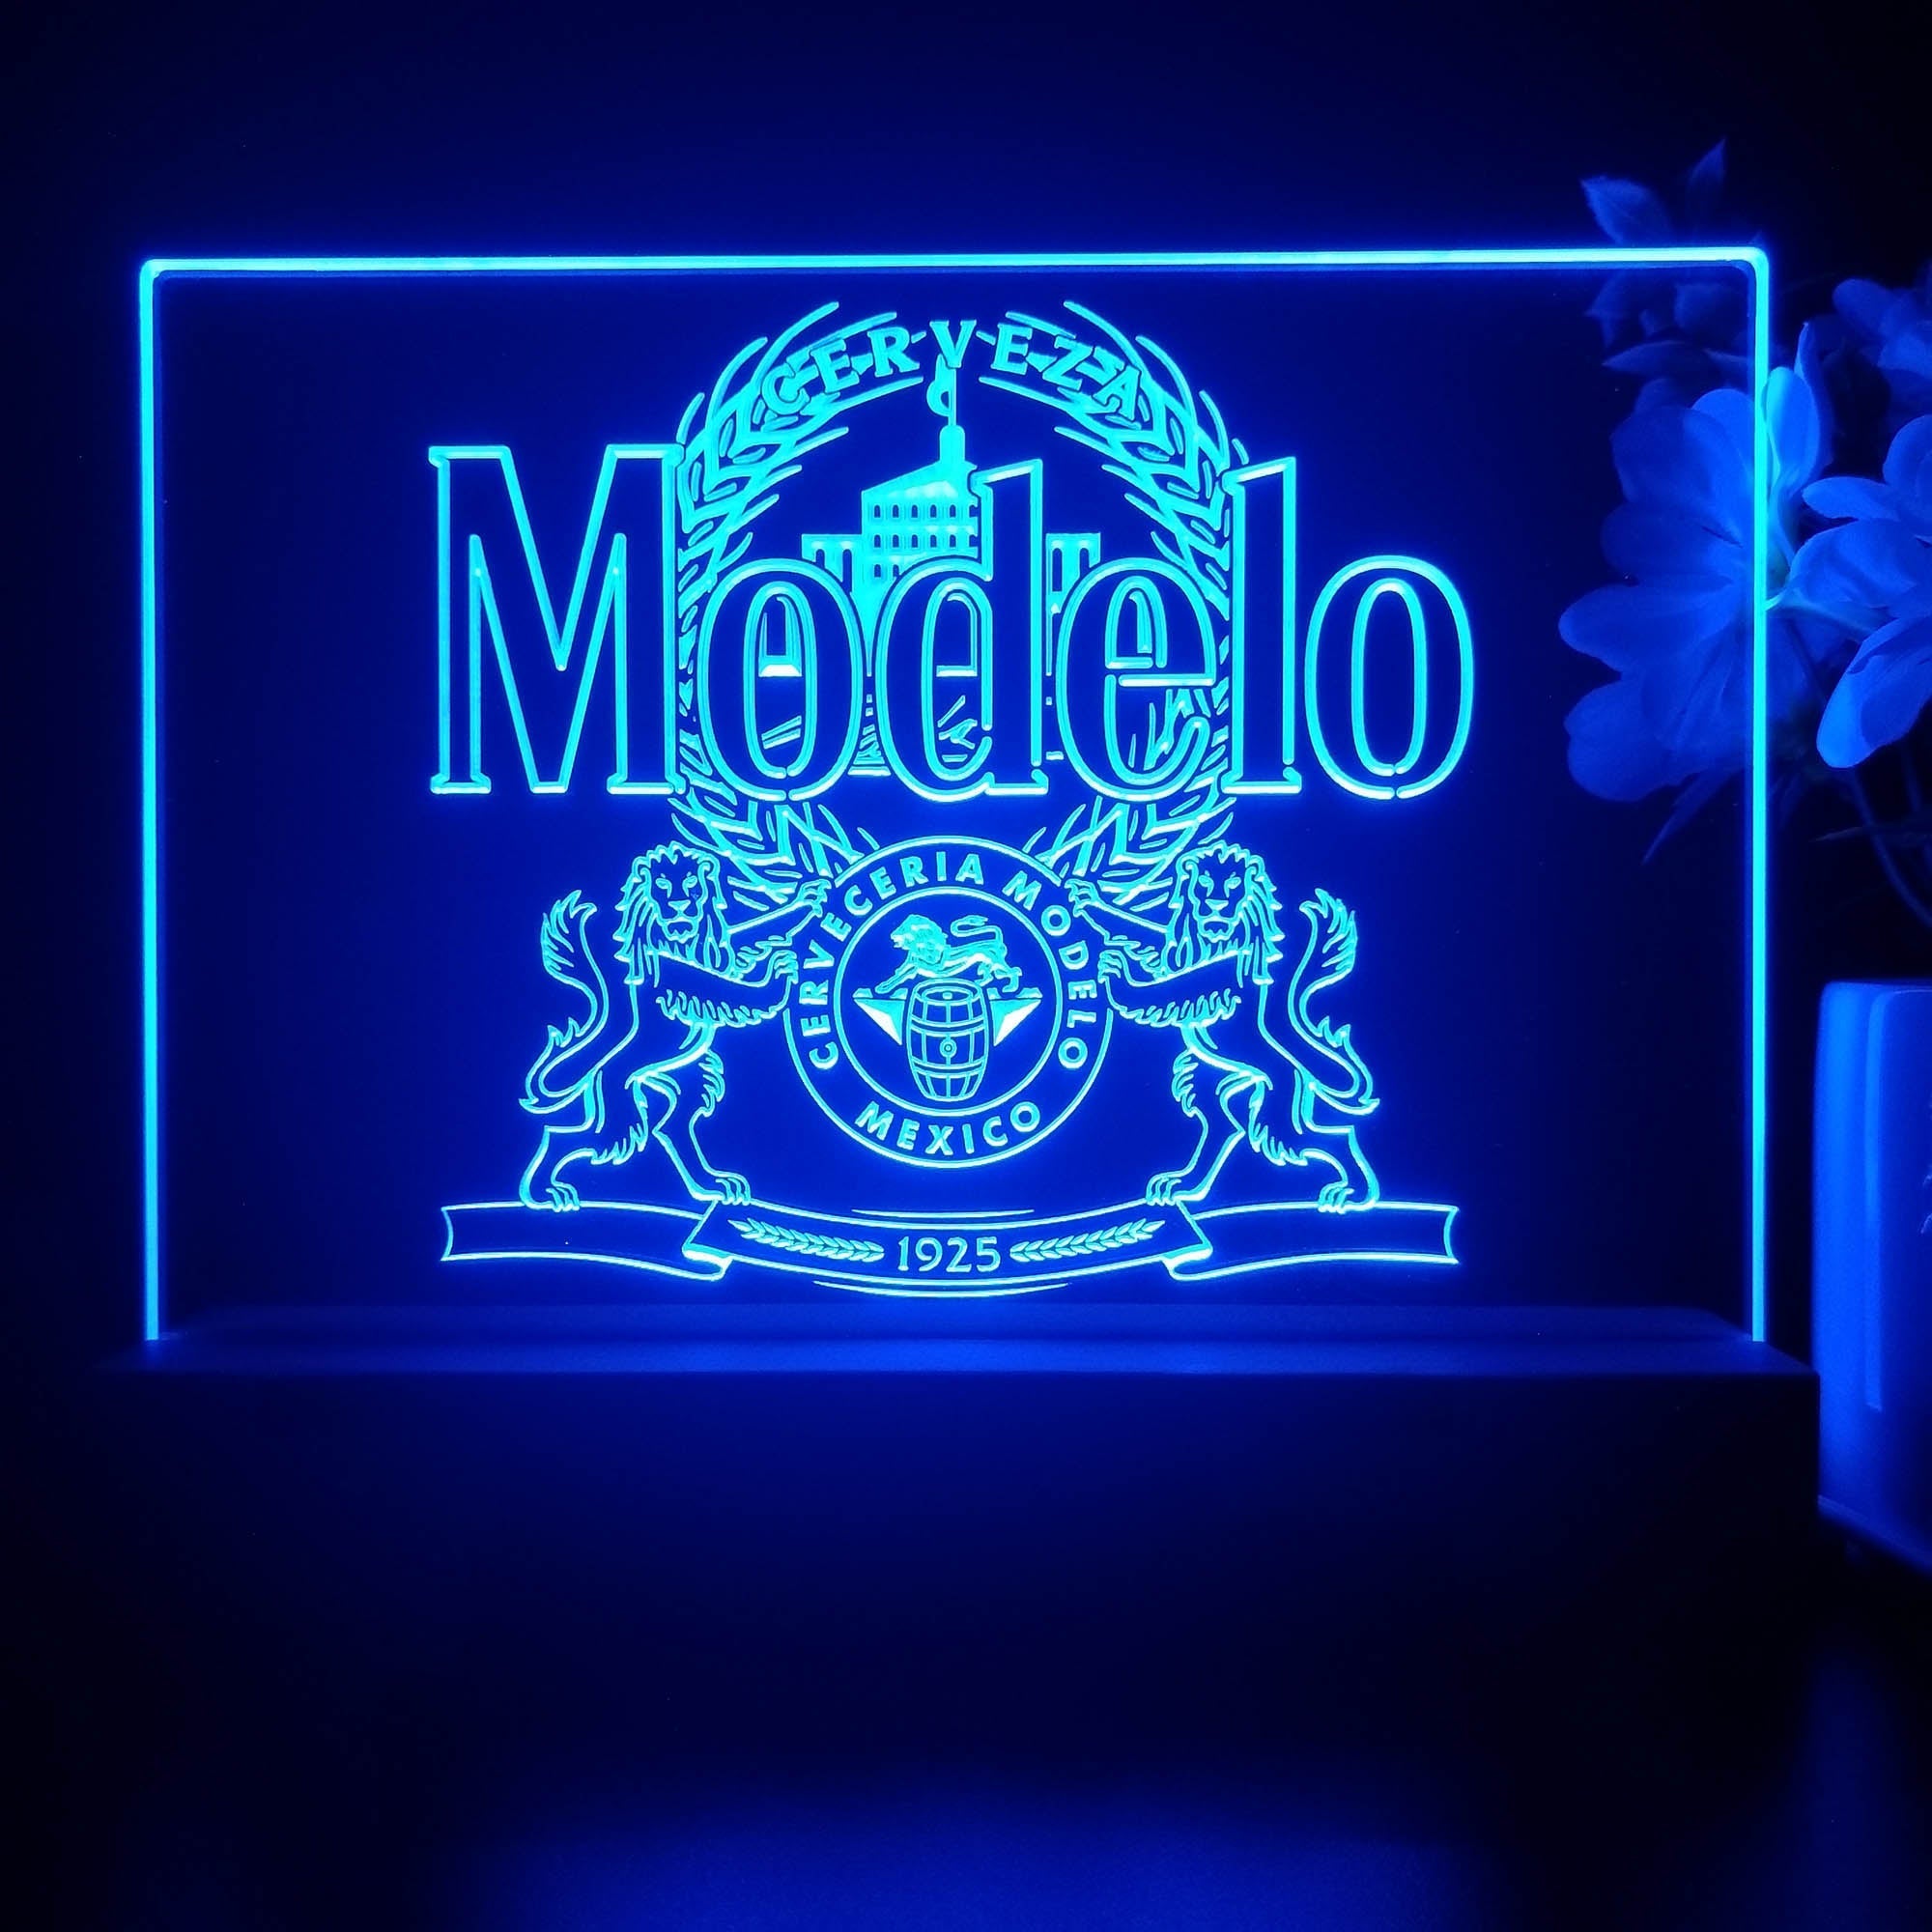 Modelo Especial Bar Neon Sign Pub Bar Decor Lamp